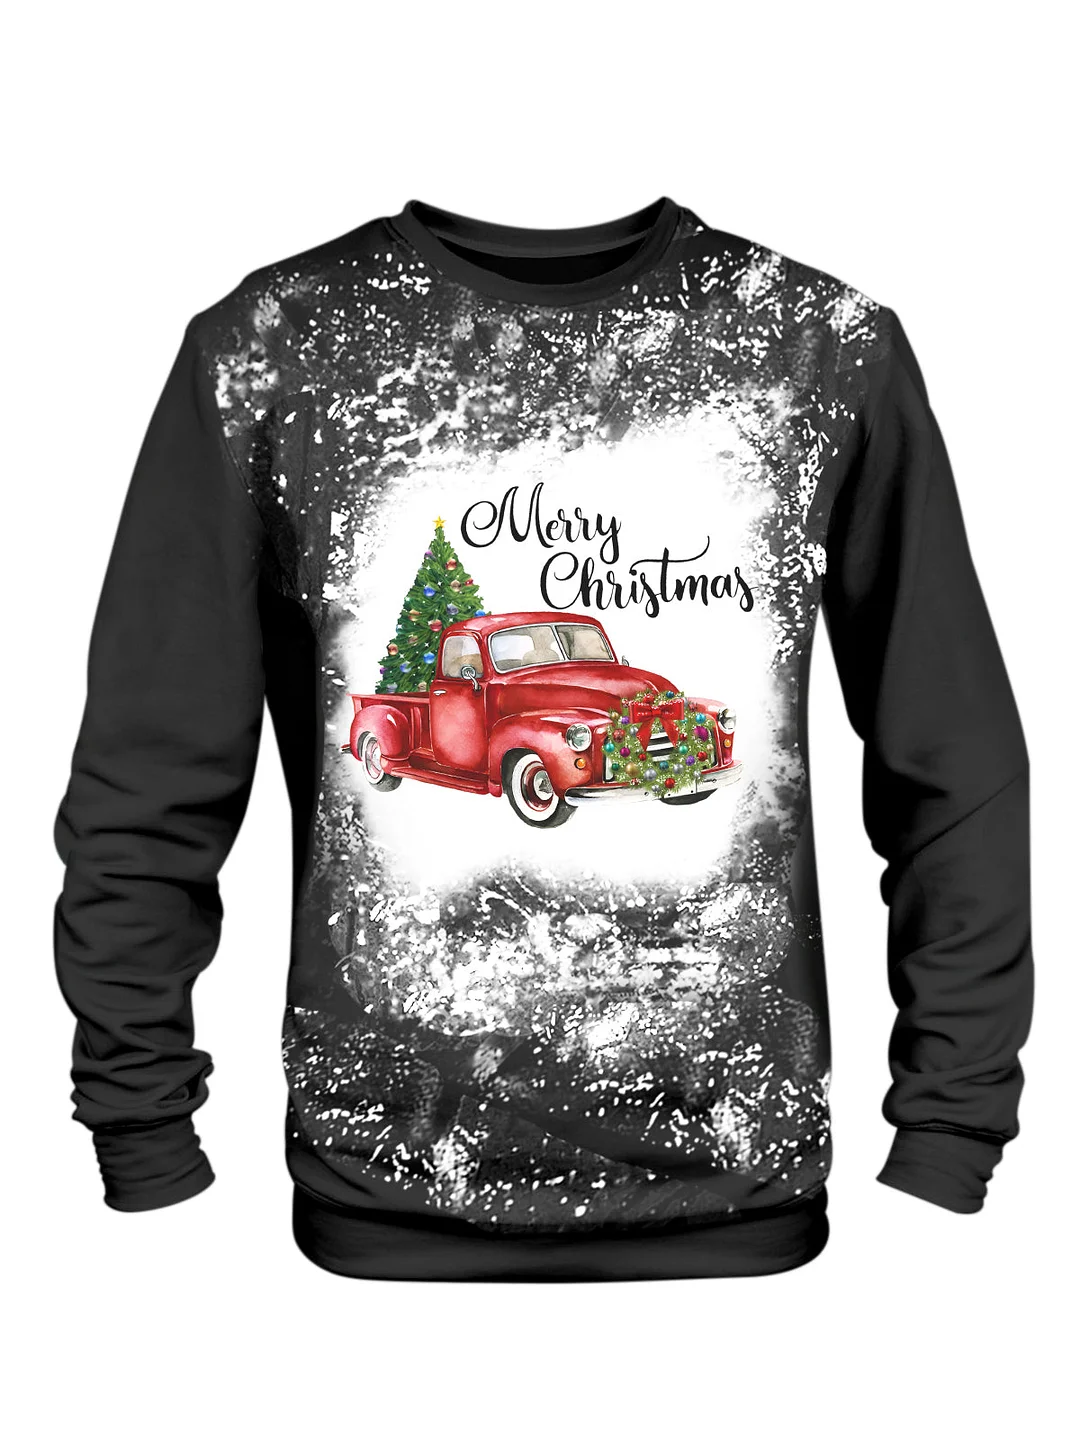 Merry Christmas Truck Print Tie Dye Long Sleeve Sweatshirt